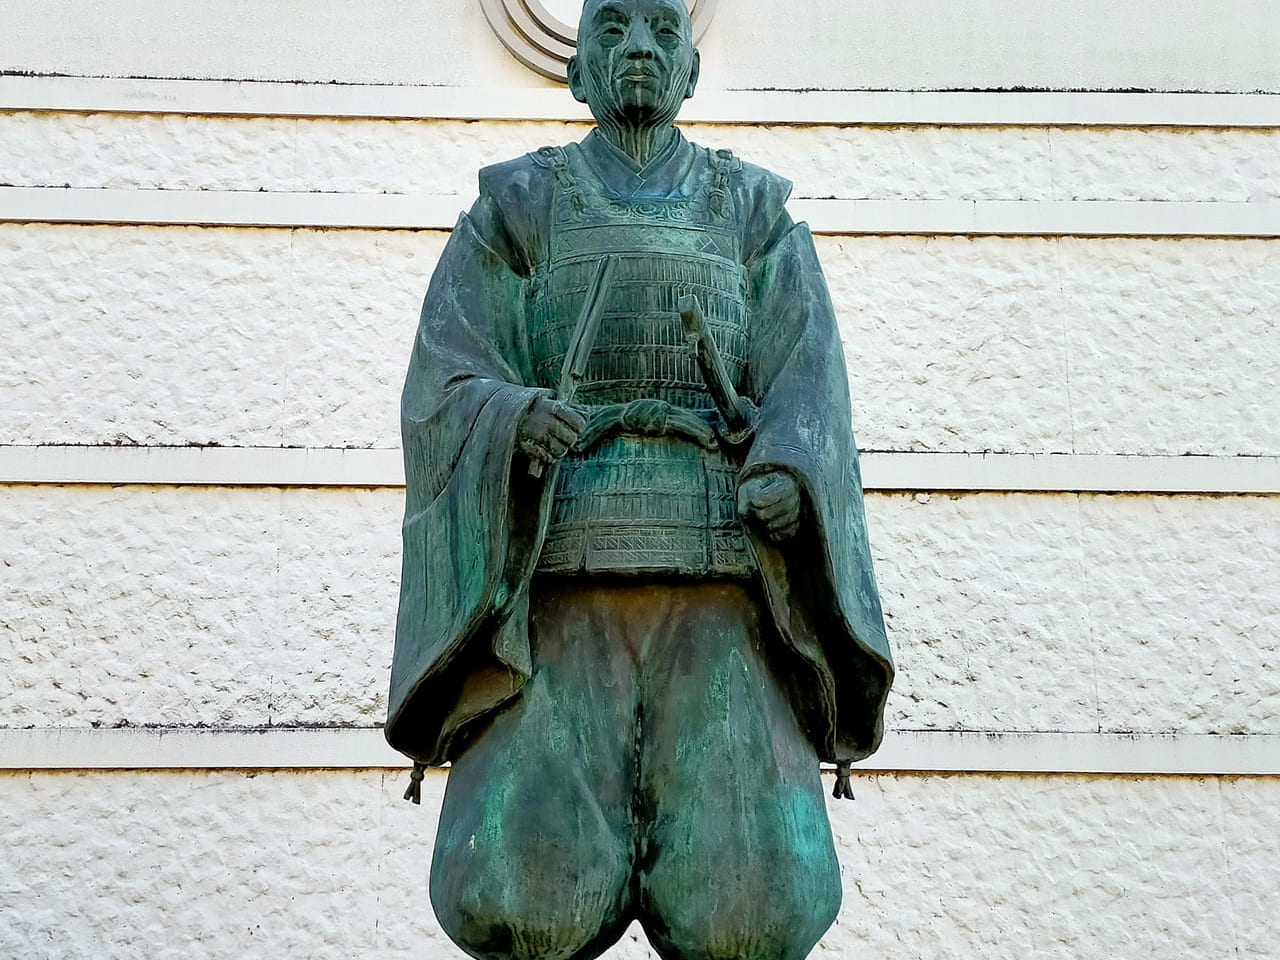 大河ドラマ「鎌倉殿の13人」で源頼朝を支える武士として登場する岡崎義実の像が平塚市にあることをご存知ですか？